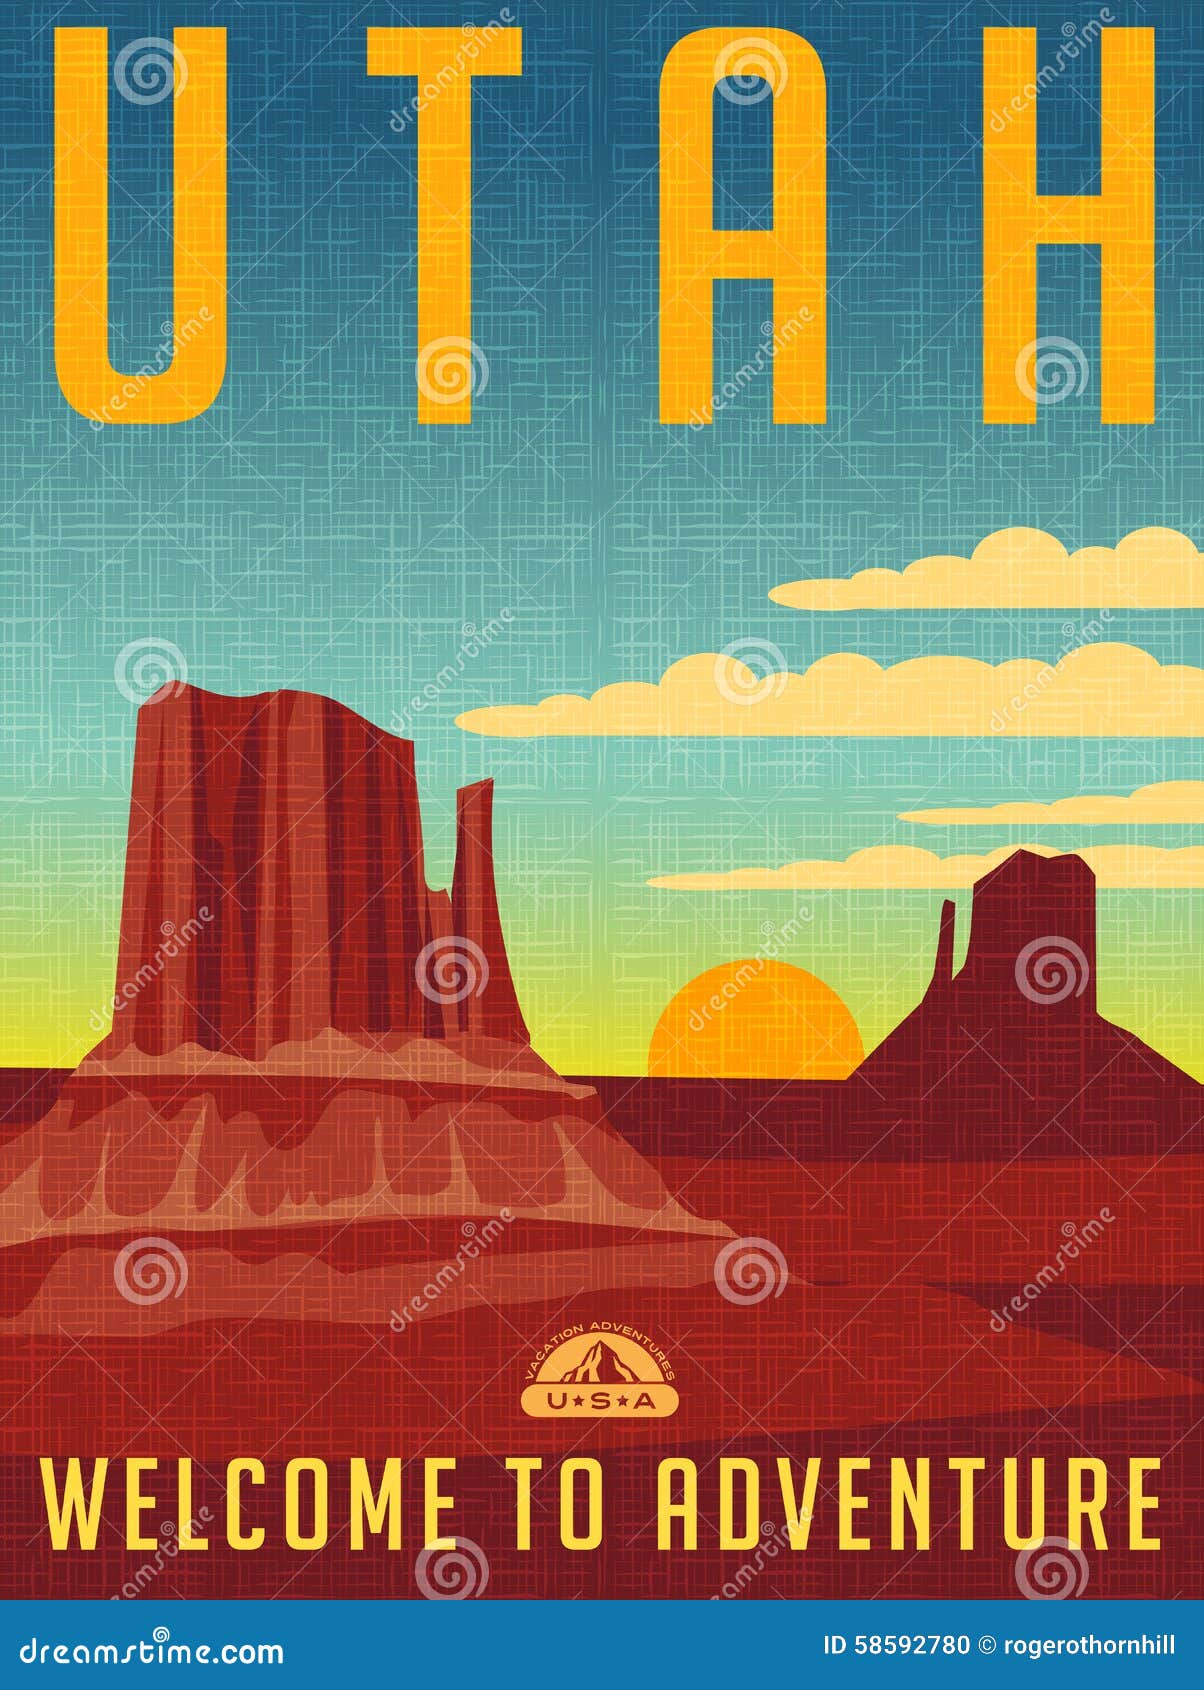 retro illustrated travel poster for utah